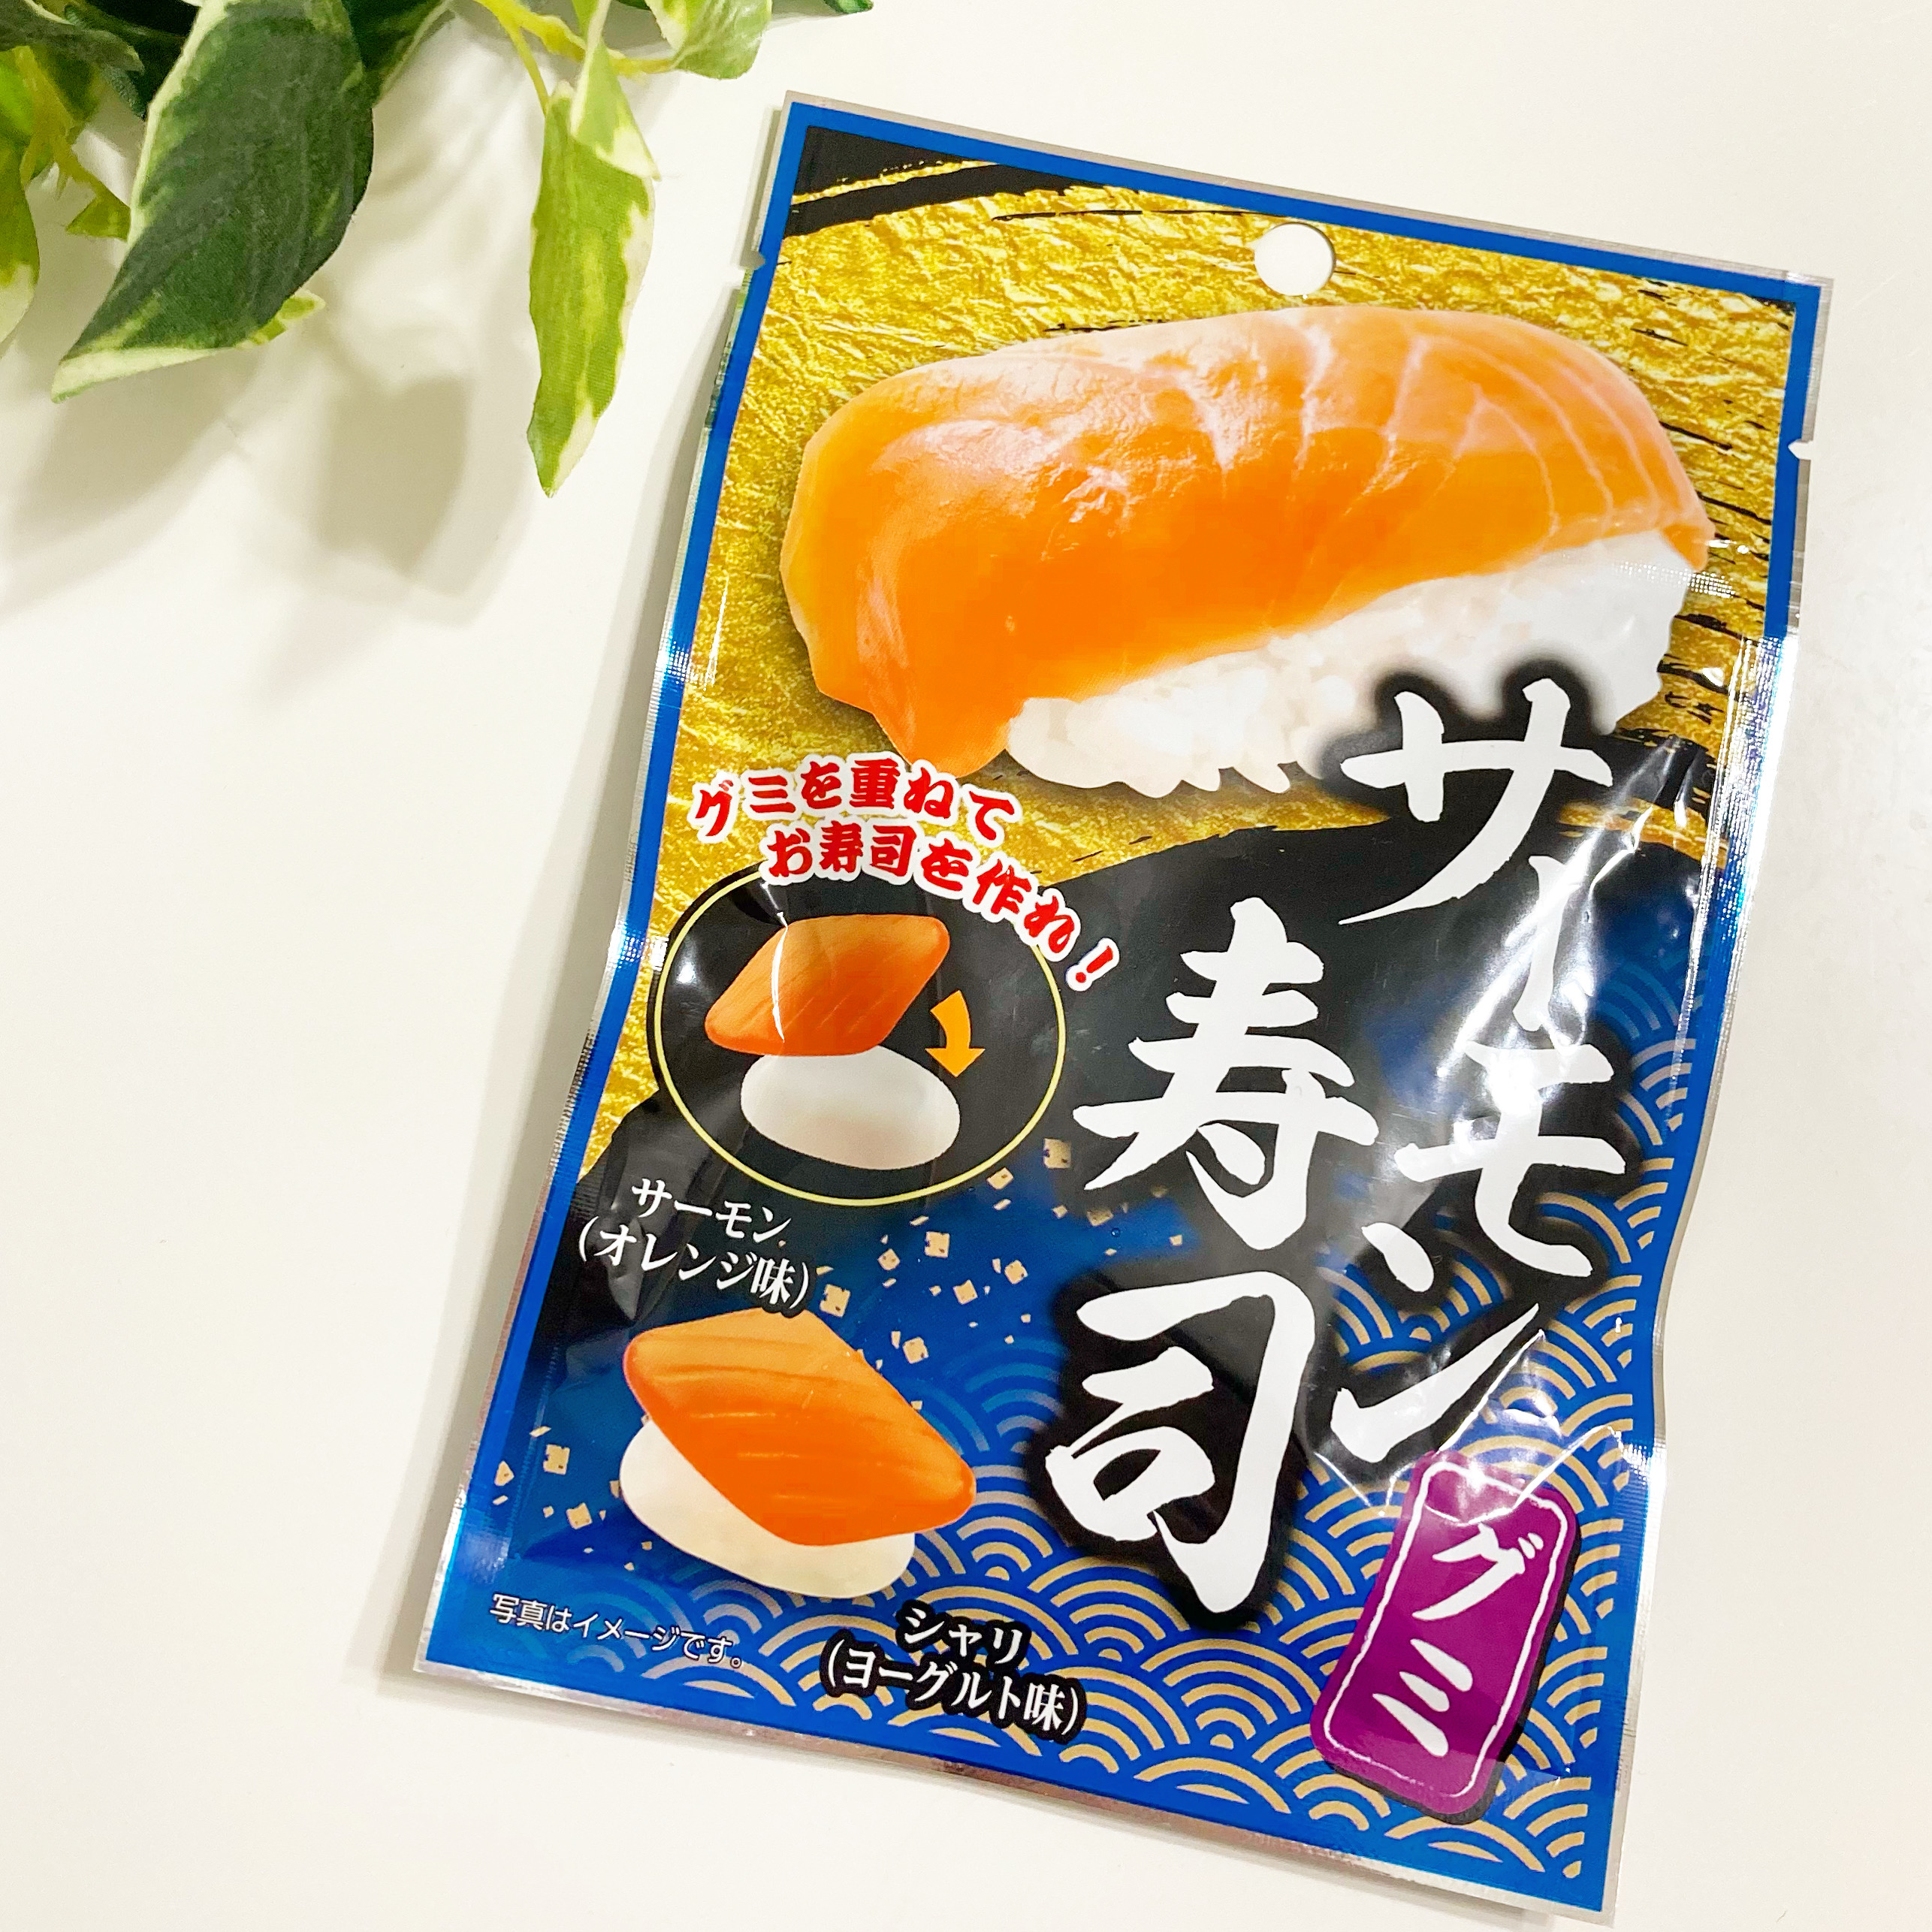 DAISO（ダイソー）のおすすめお菓子「サーモン寿司グミ」